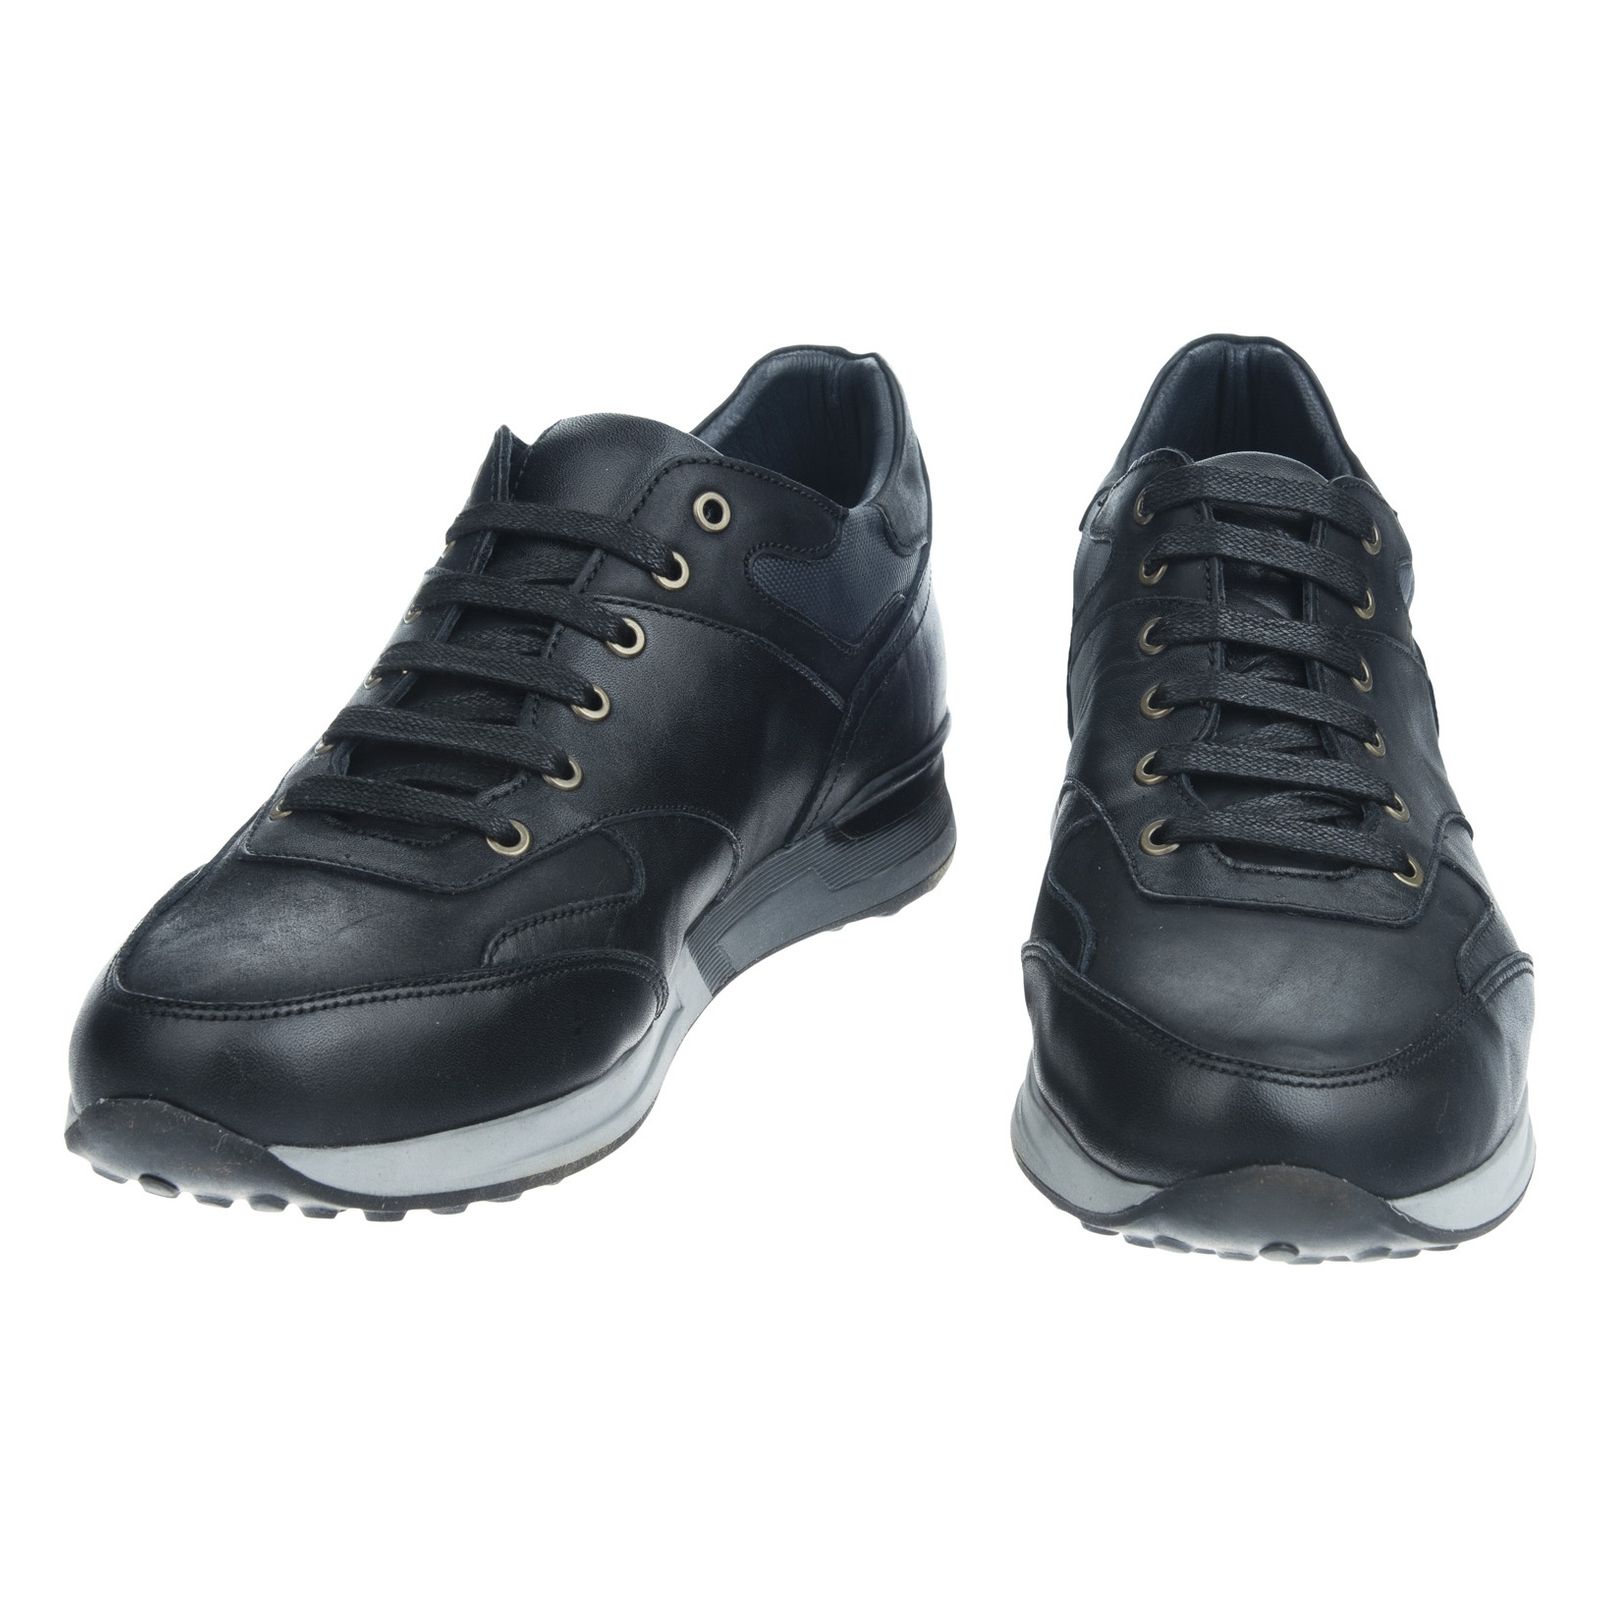 کفش روزمره مردانه برتونیکس مدل KH50332-27 - مشکی - 4